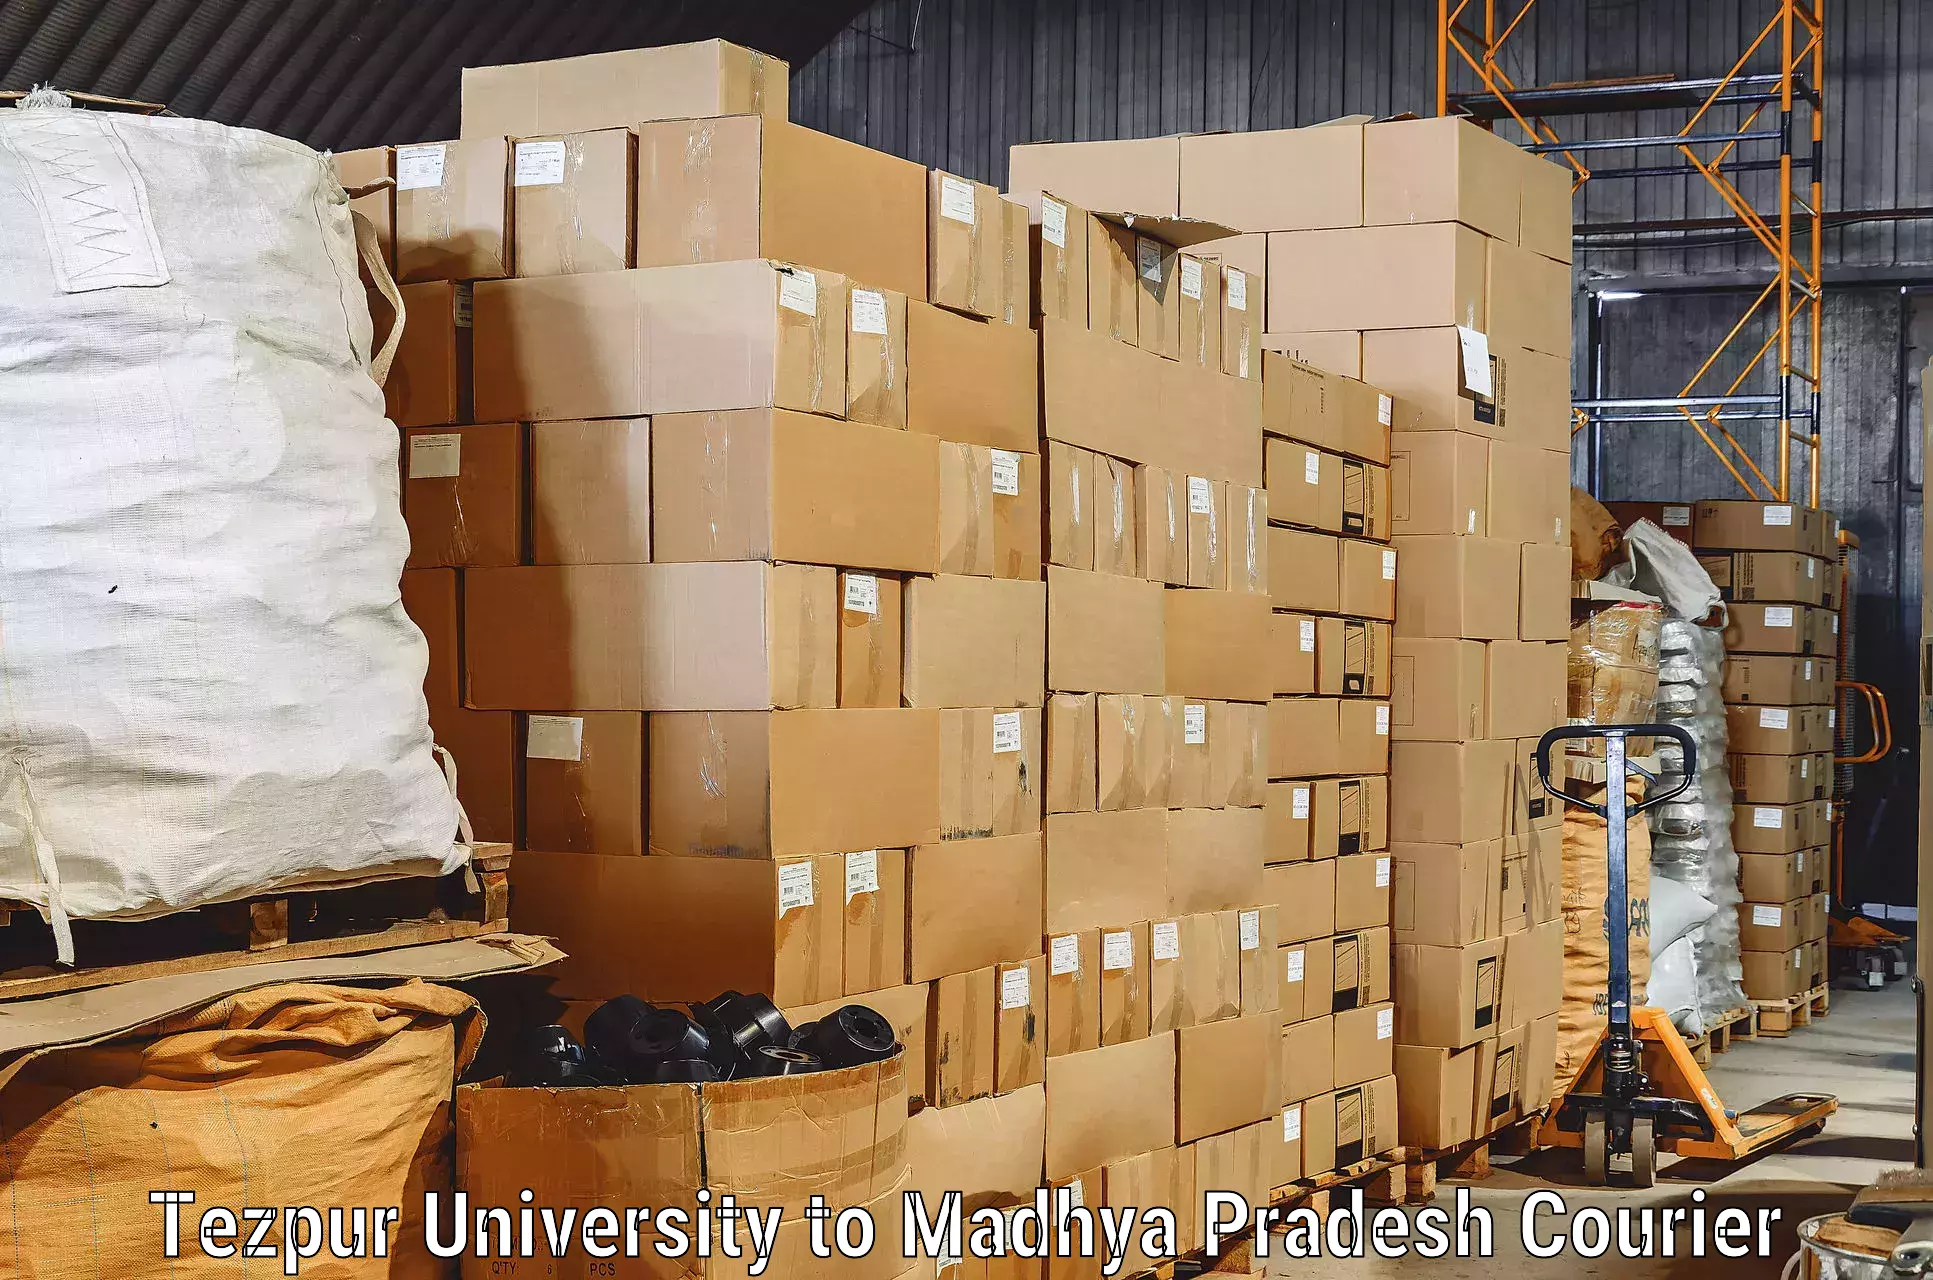 Furniture moving experts Tezpur University to Bareli